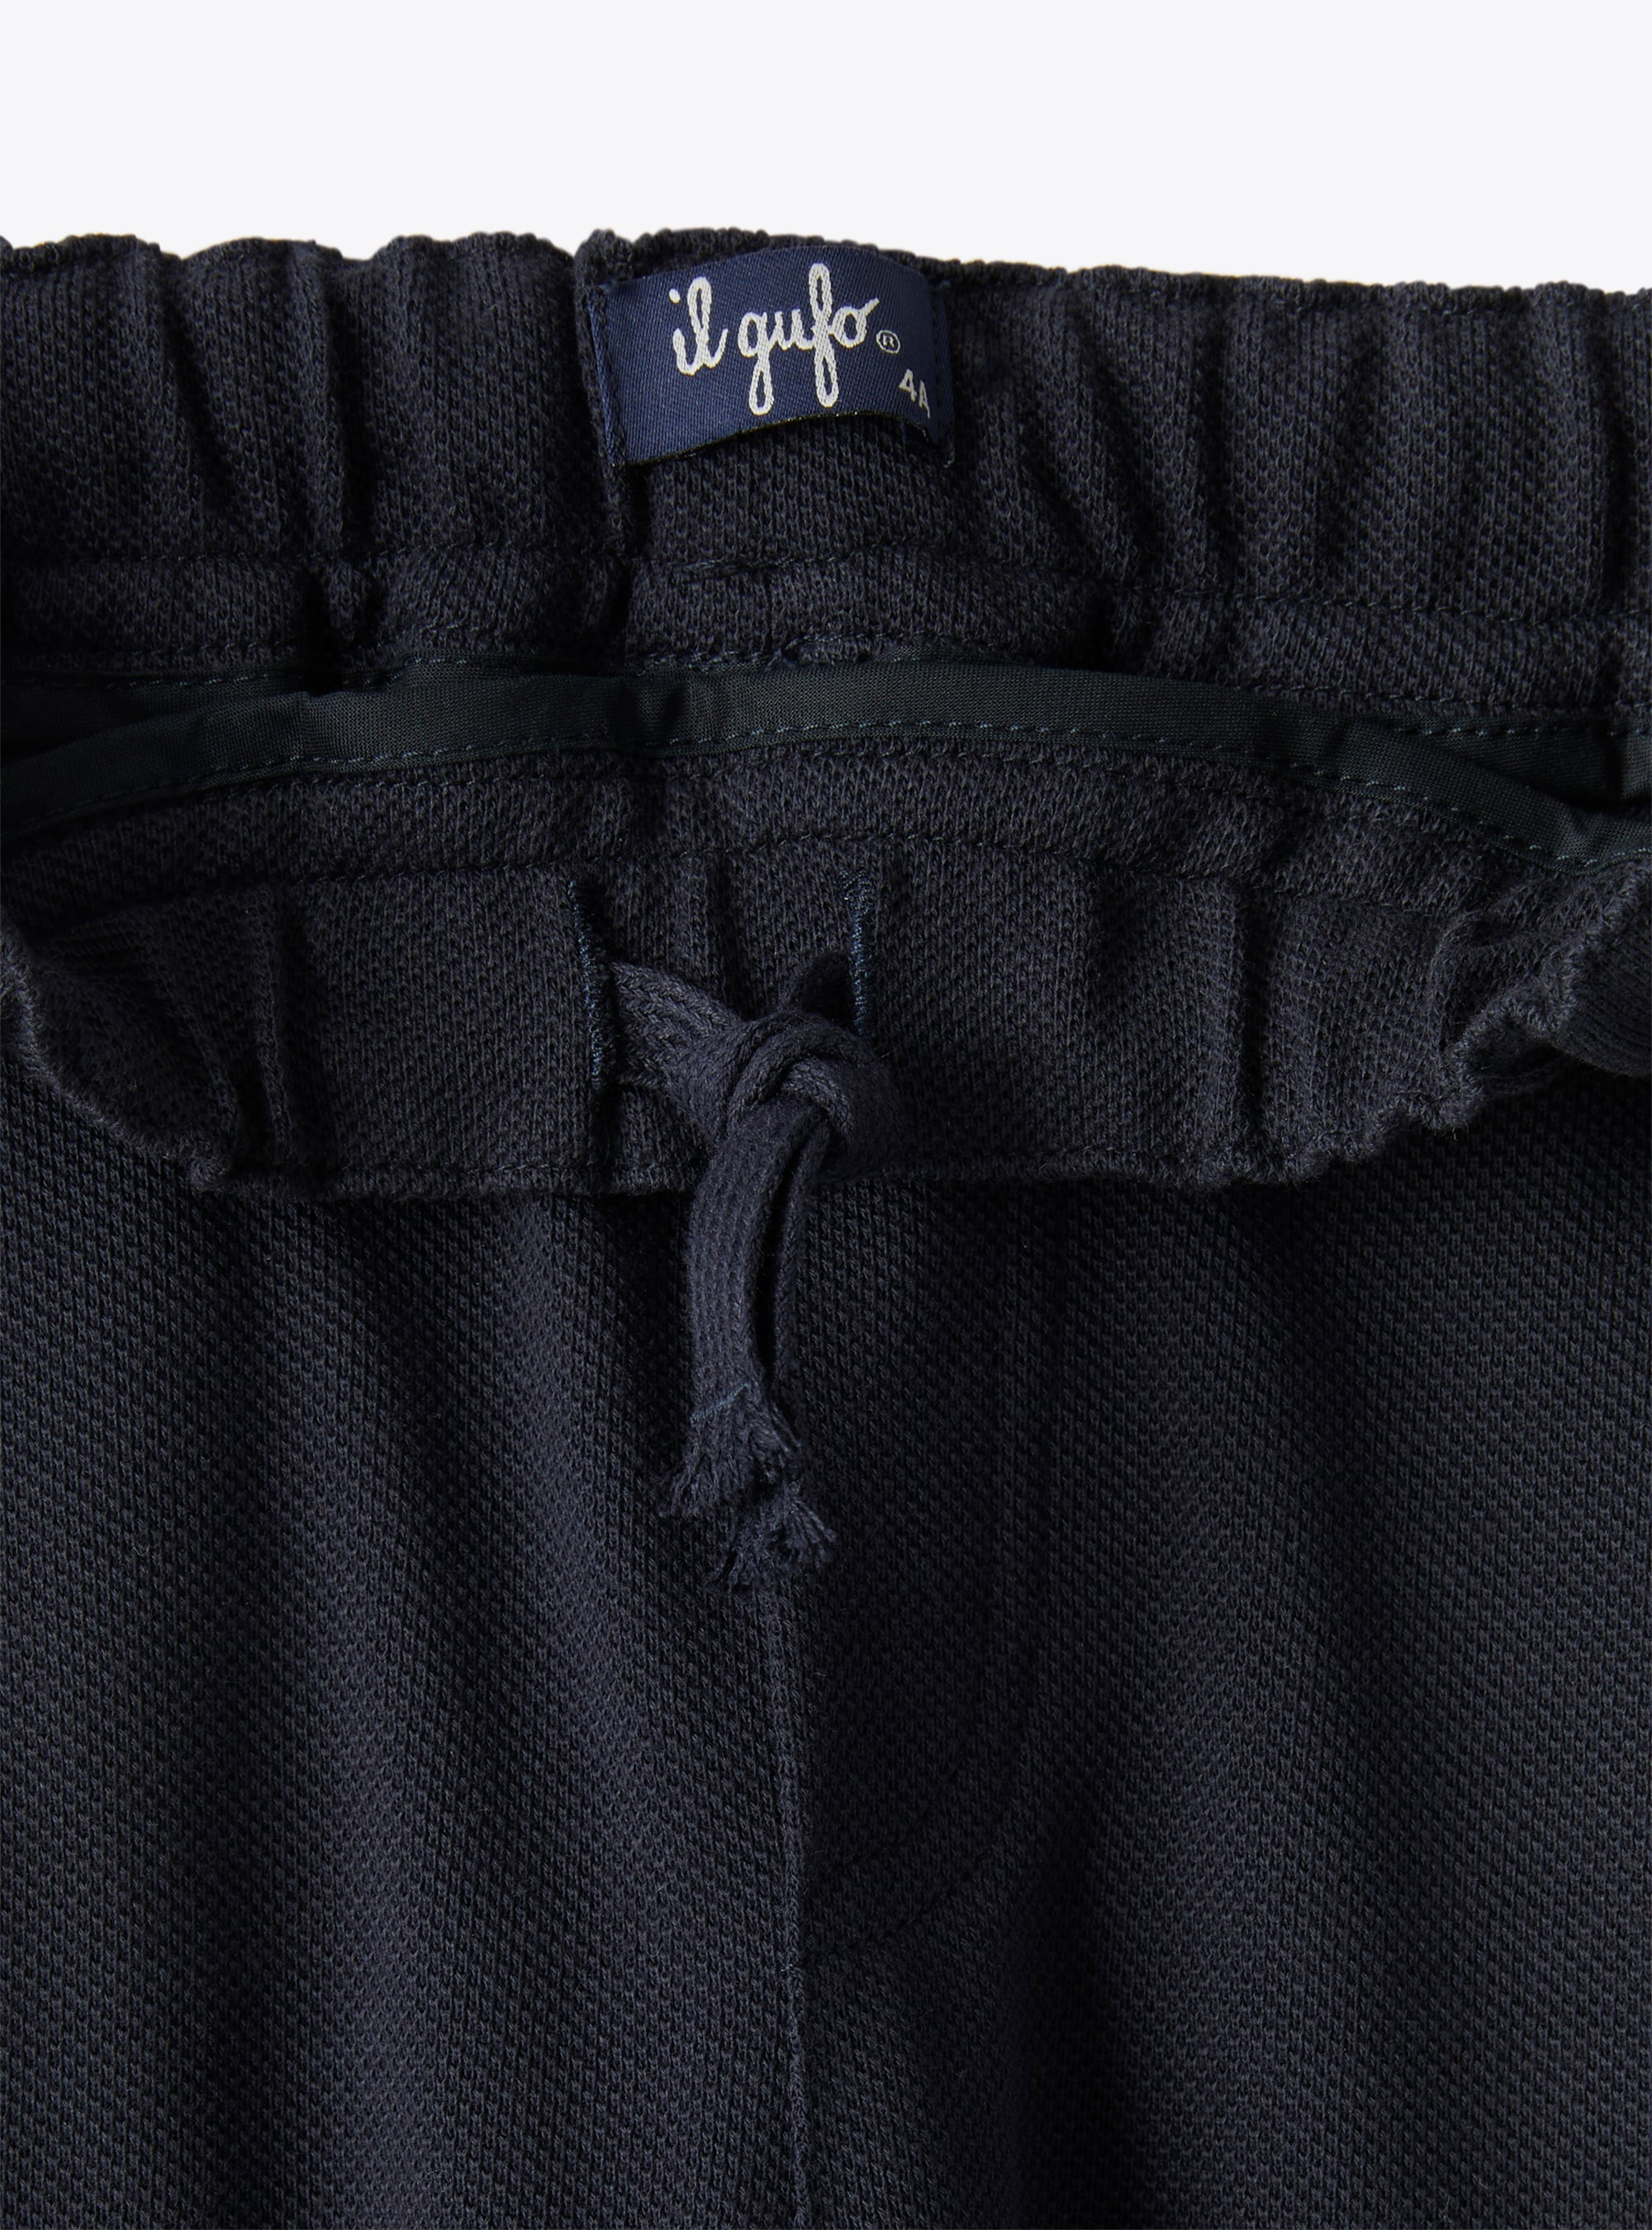 Темно-синие брюки стандартной длины из пике - СИНИЙ | Il Gufo